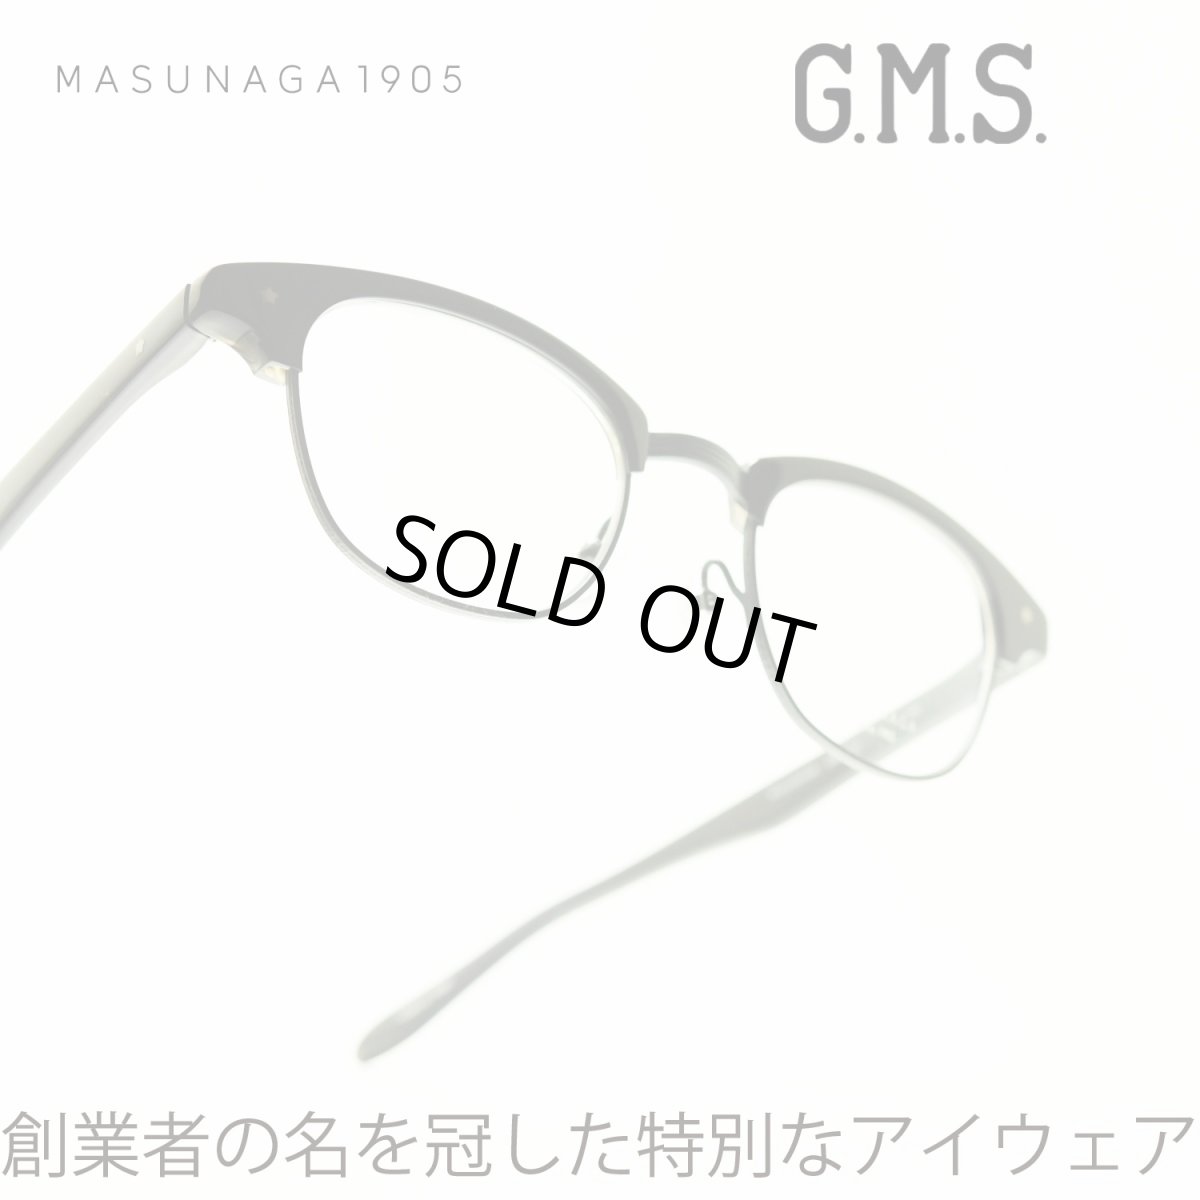 画像1: 増永眼鏡 MASUNAGA GMS-32 col-25 D.NAVY (1)